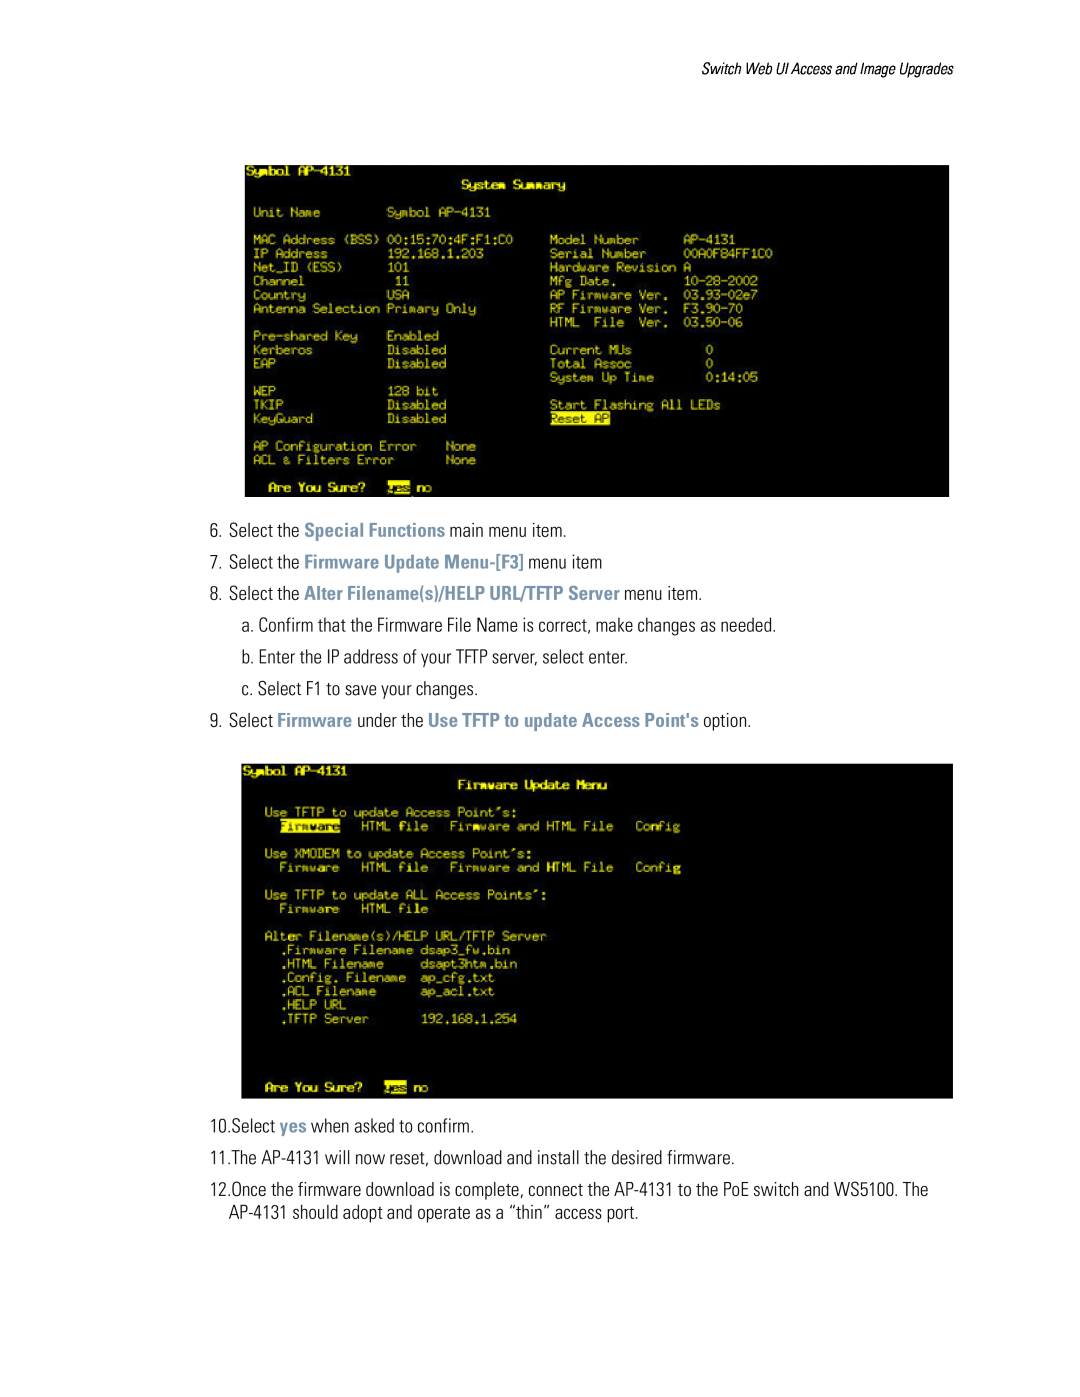 Motorola WS5100 manual Select the Firmware Update Menu-F3 menu item 